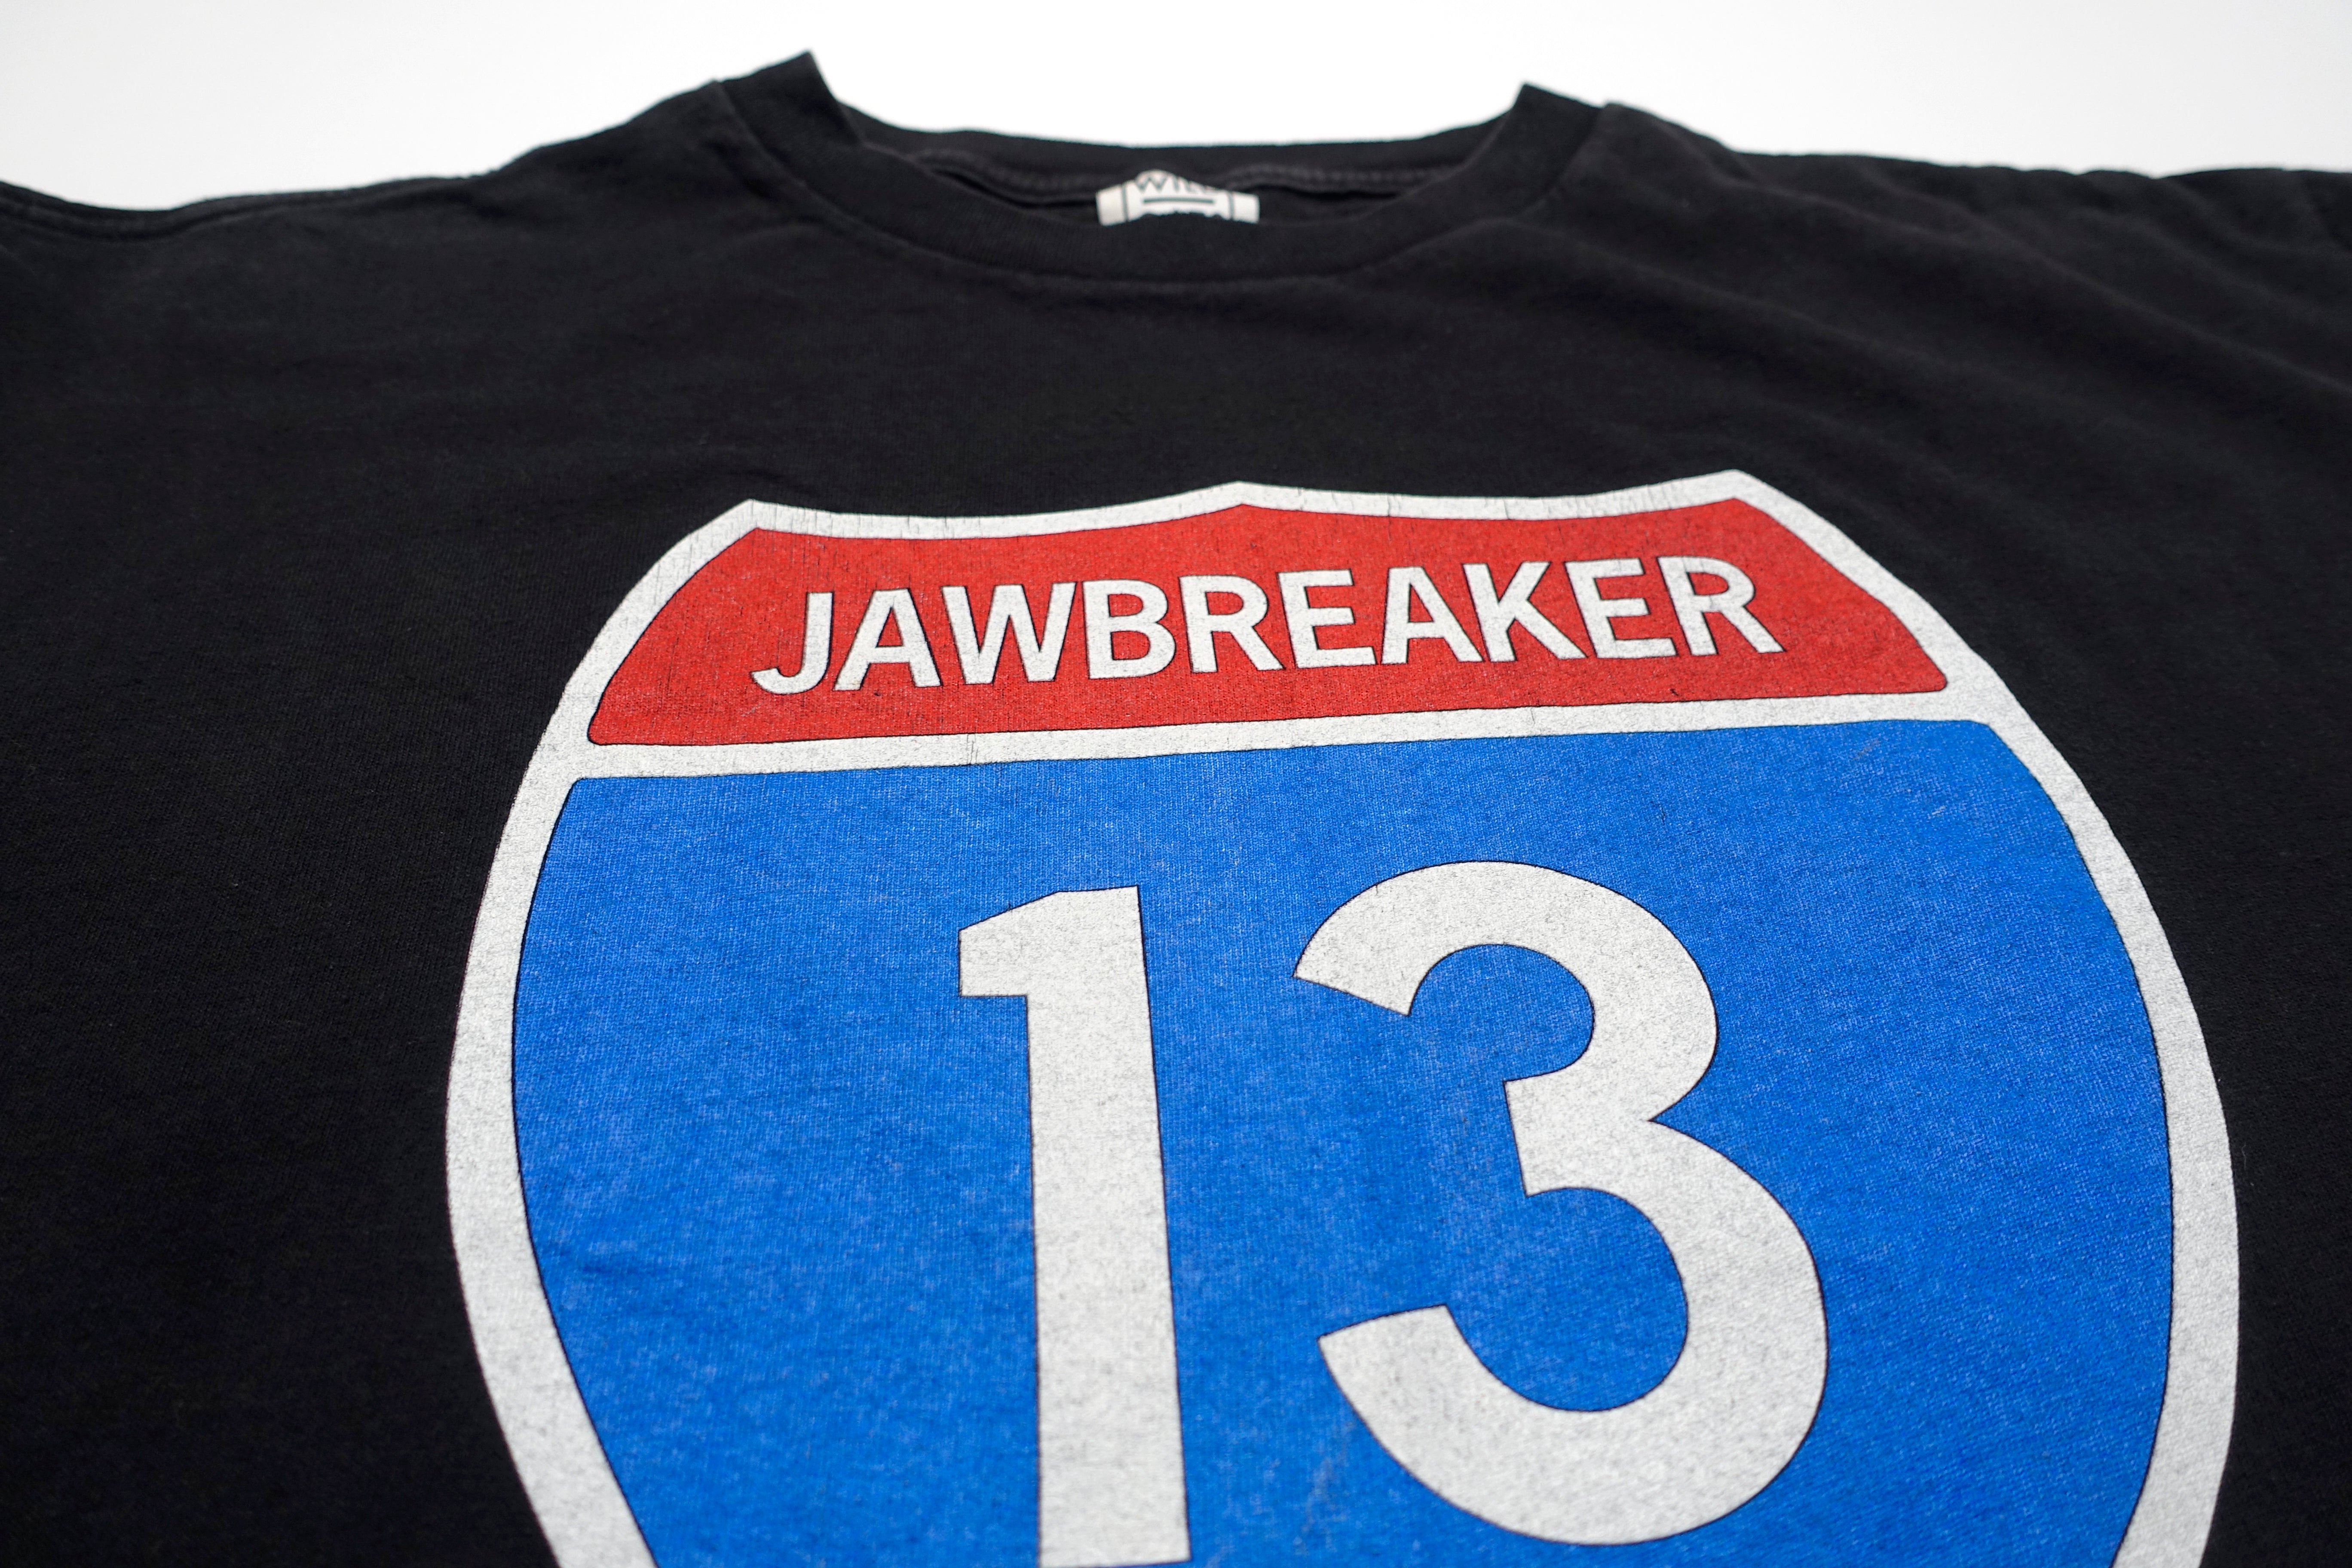 Jawbreaker - Interstate 13 / Dear You 1995 Tour Shirt Size XL